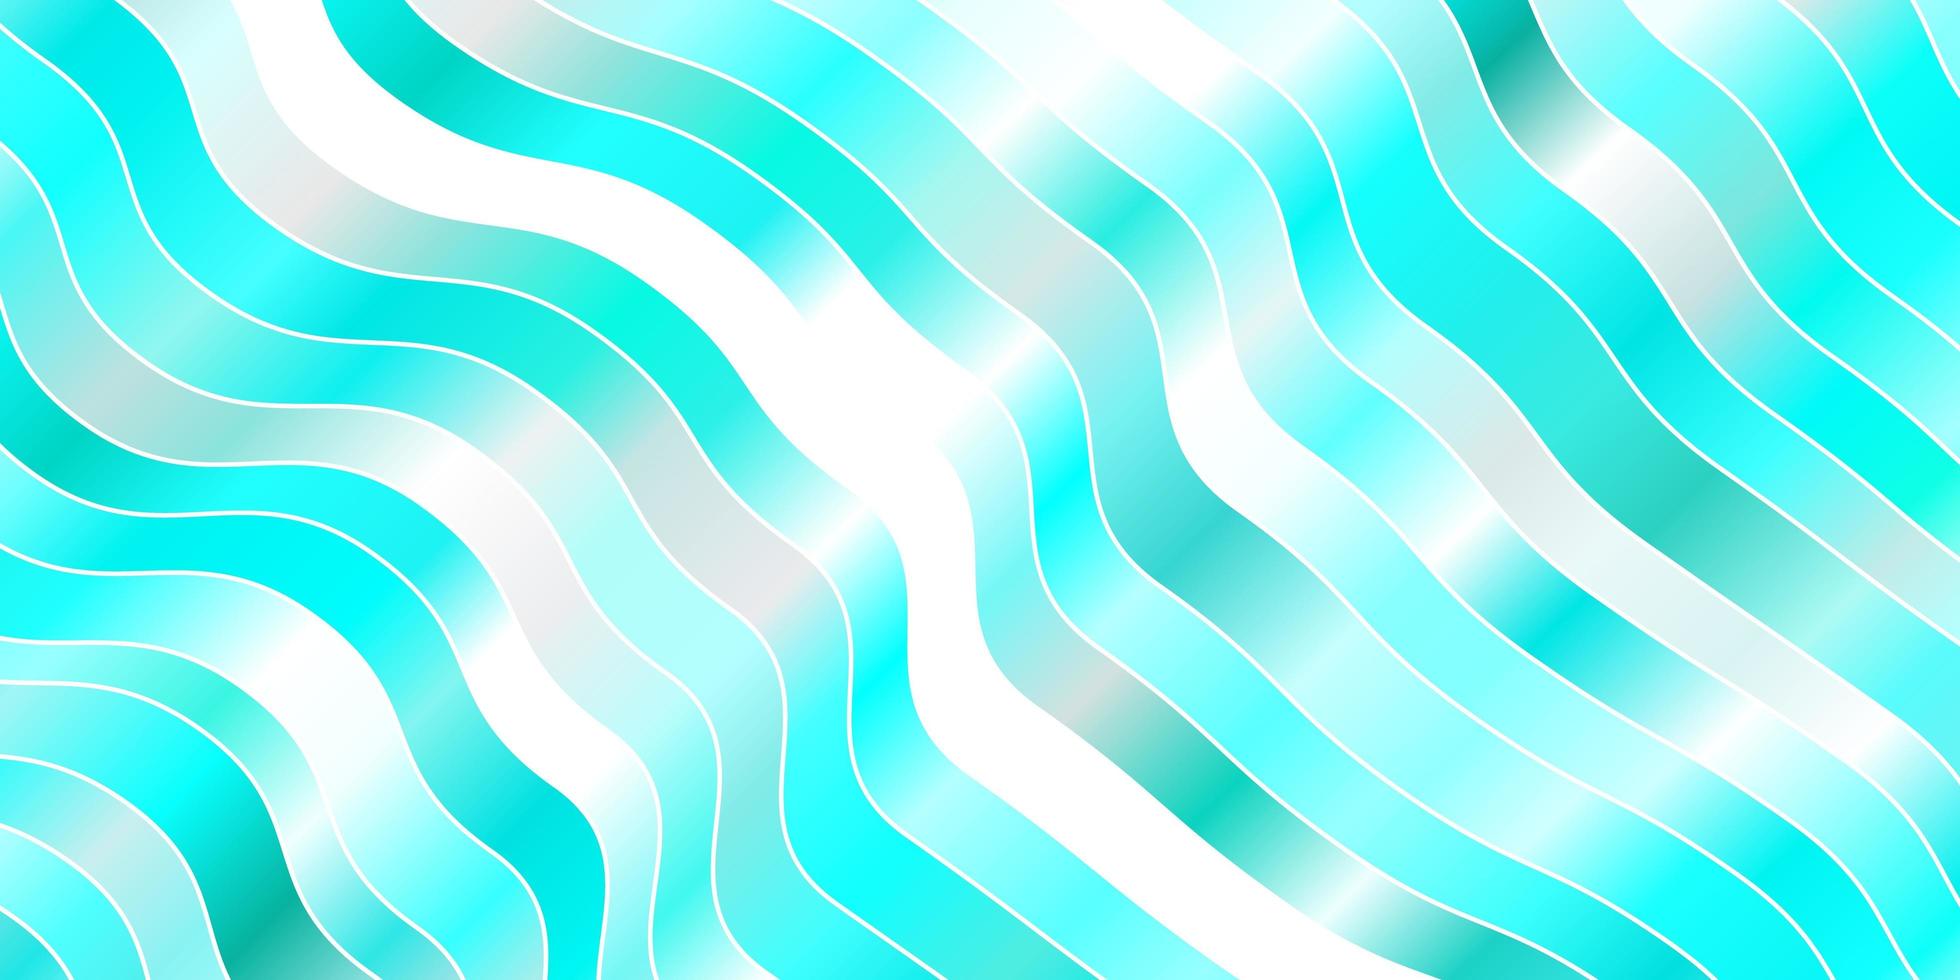 textura de vetor azul claro com curvas ilustração colorida em estilo circular com padrão de linhas para páginas de destino de sites